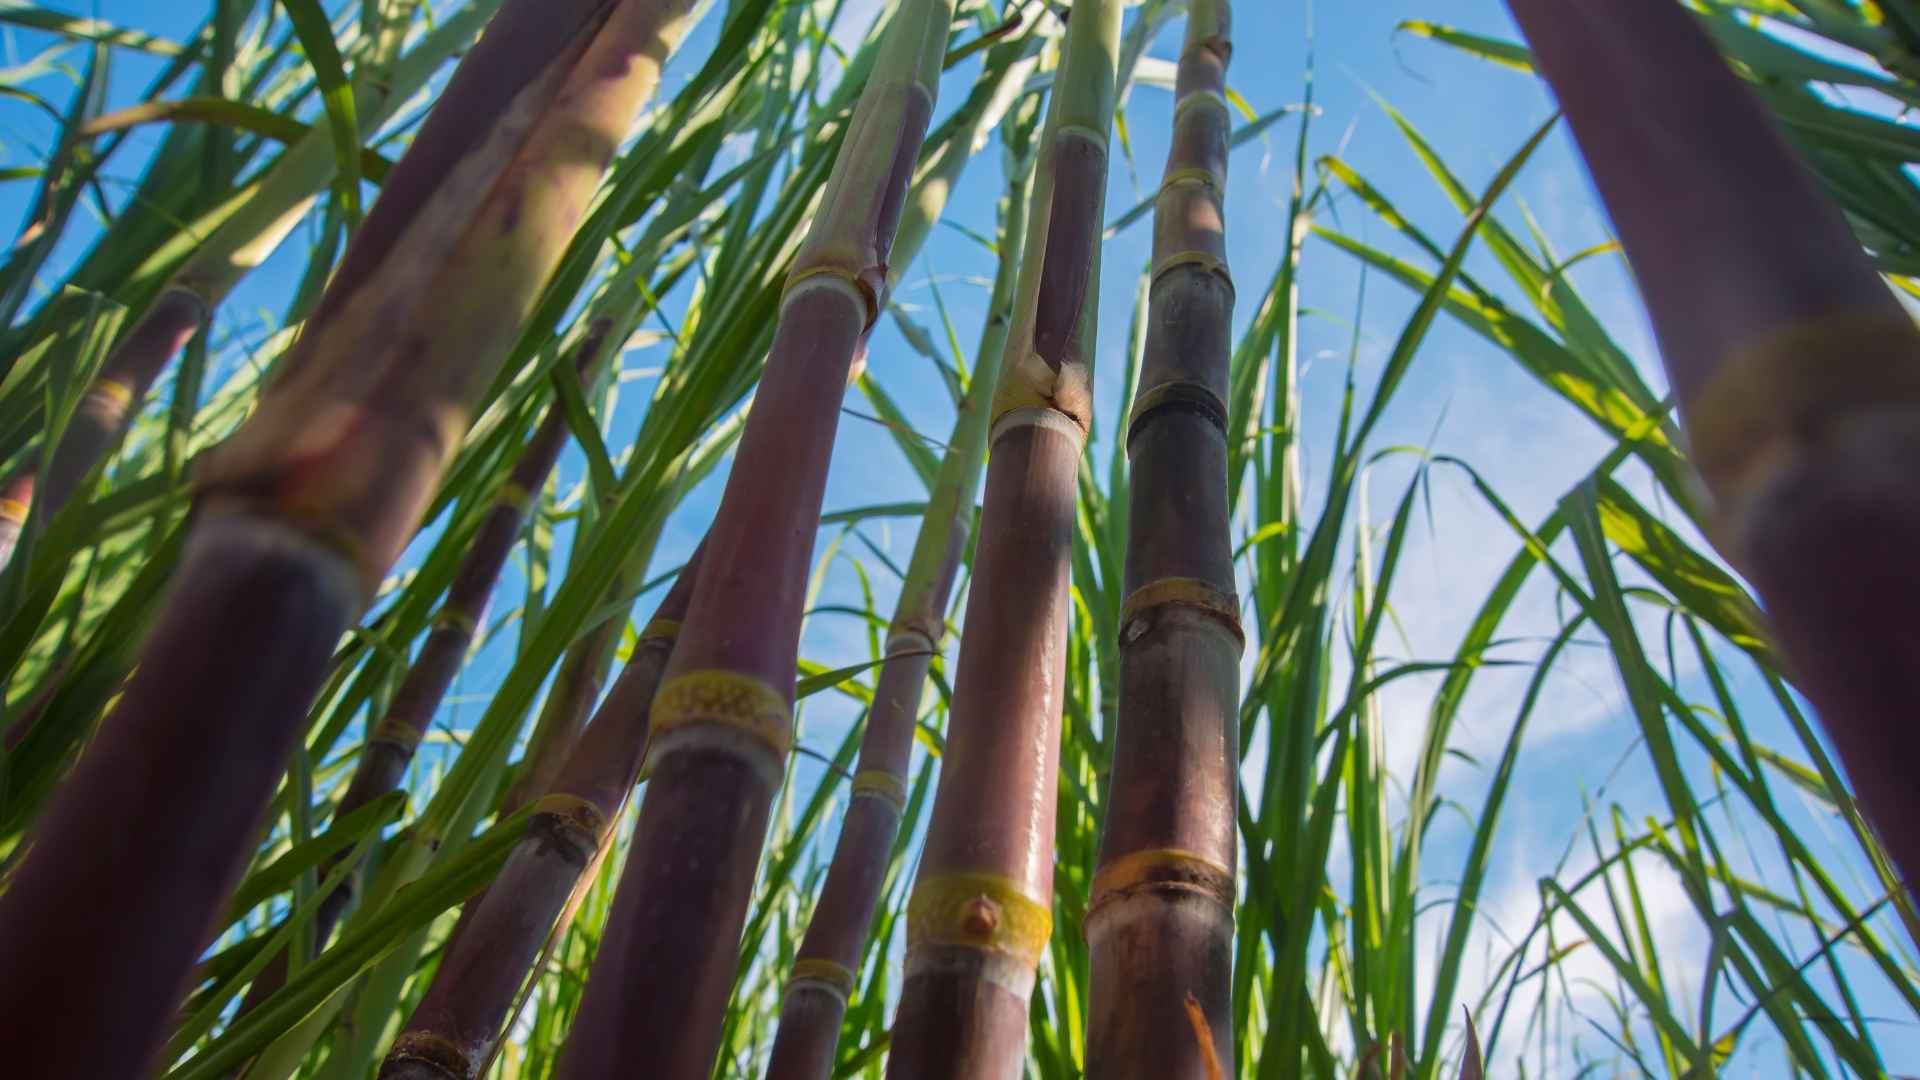 Produção paulista de cana-de-açúcar deve subir para 78,5 t por hectare em 2023, estima IEA